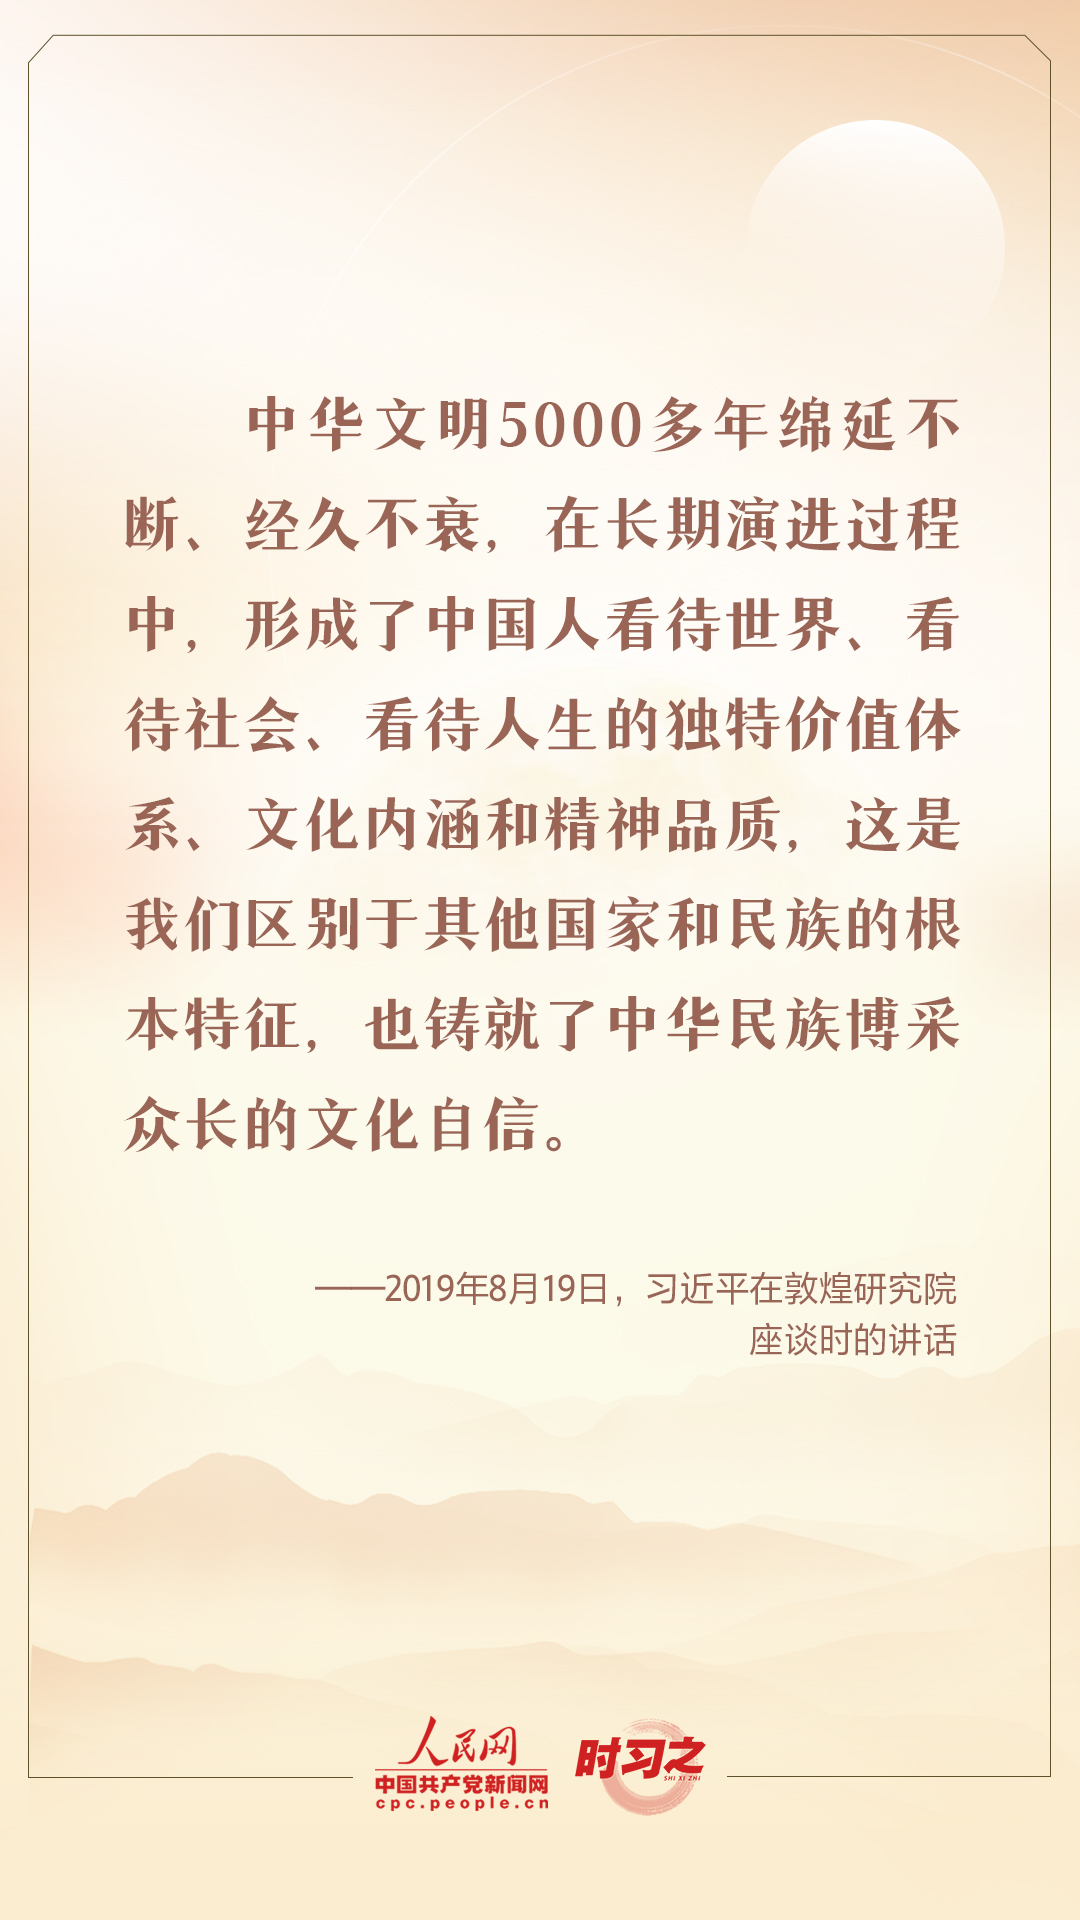 迎中秋 话传统 跟总书记一起坚定中华文化自信